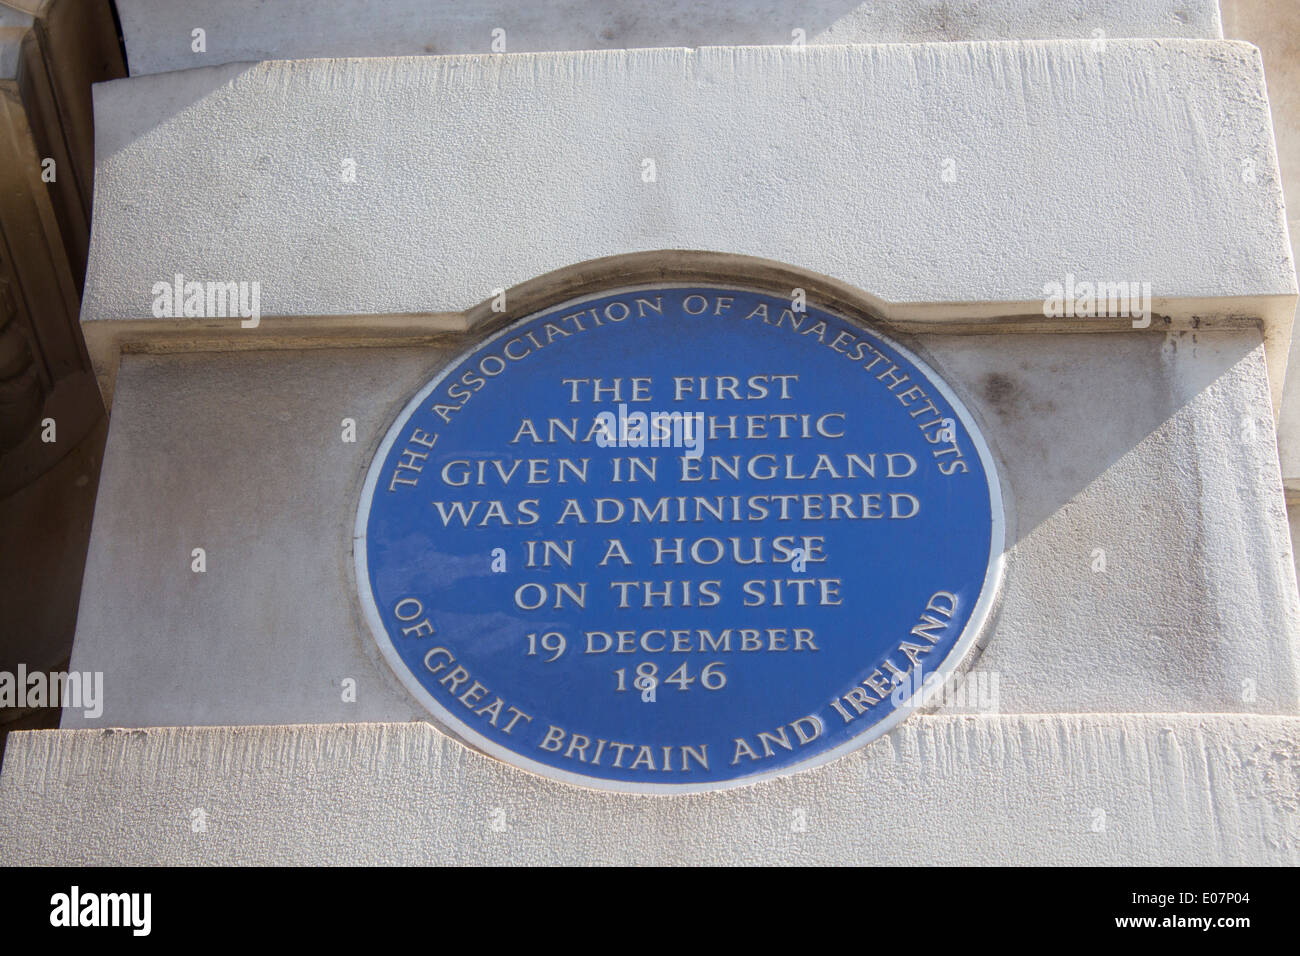 Targa blu su Gower Street commemorando sito dove prima anestetico in Inghilterra è stata somministrata nel 1846 Londra Inghilterra REGNO UNITO Foto Stock